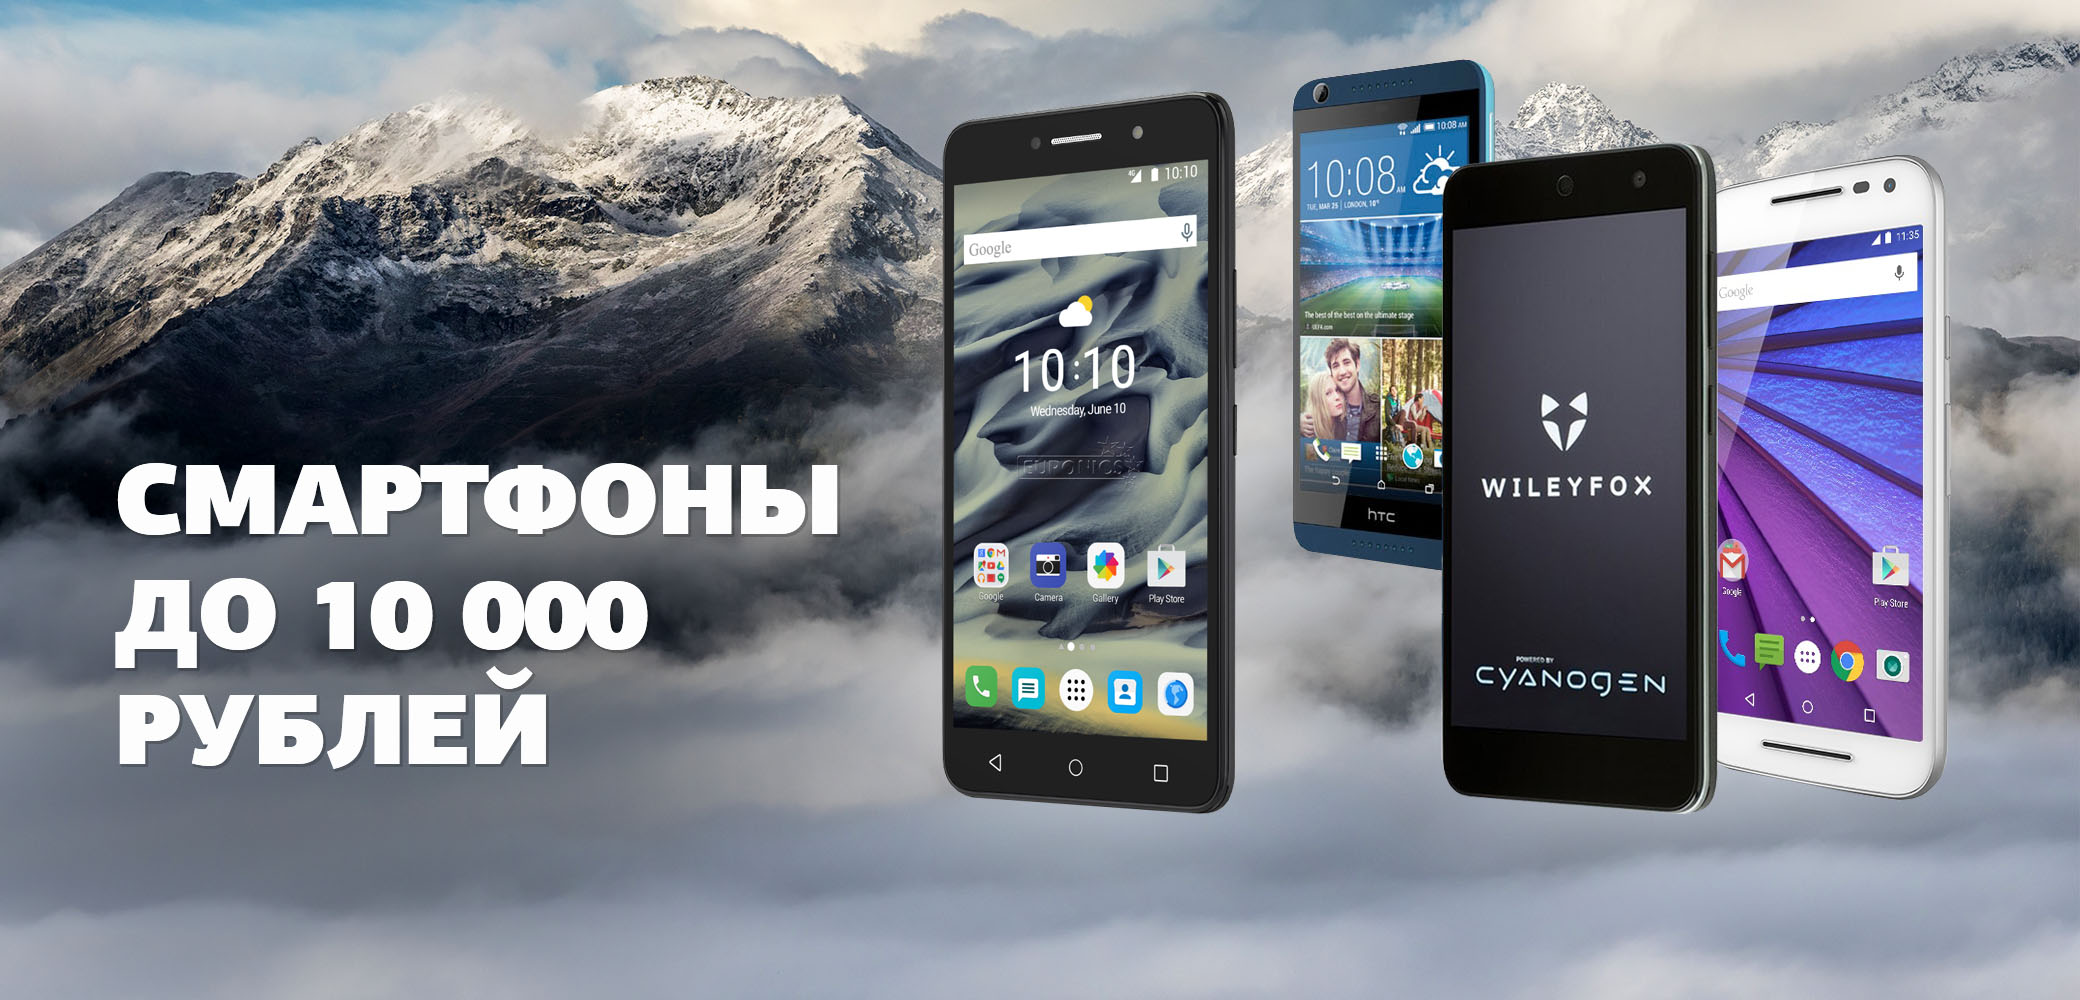 Купить Телефон За 10 Тысяч Рублей